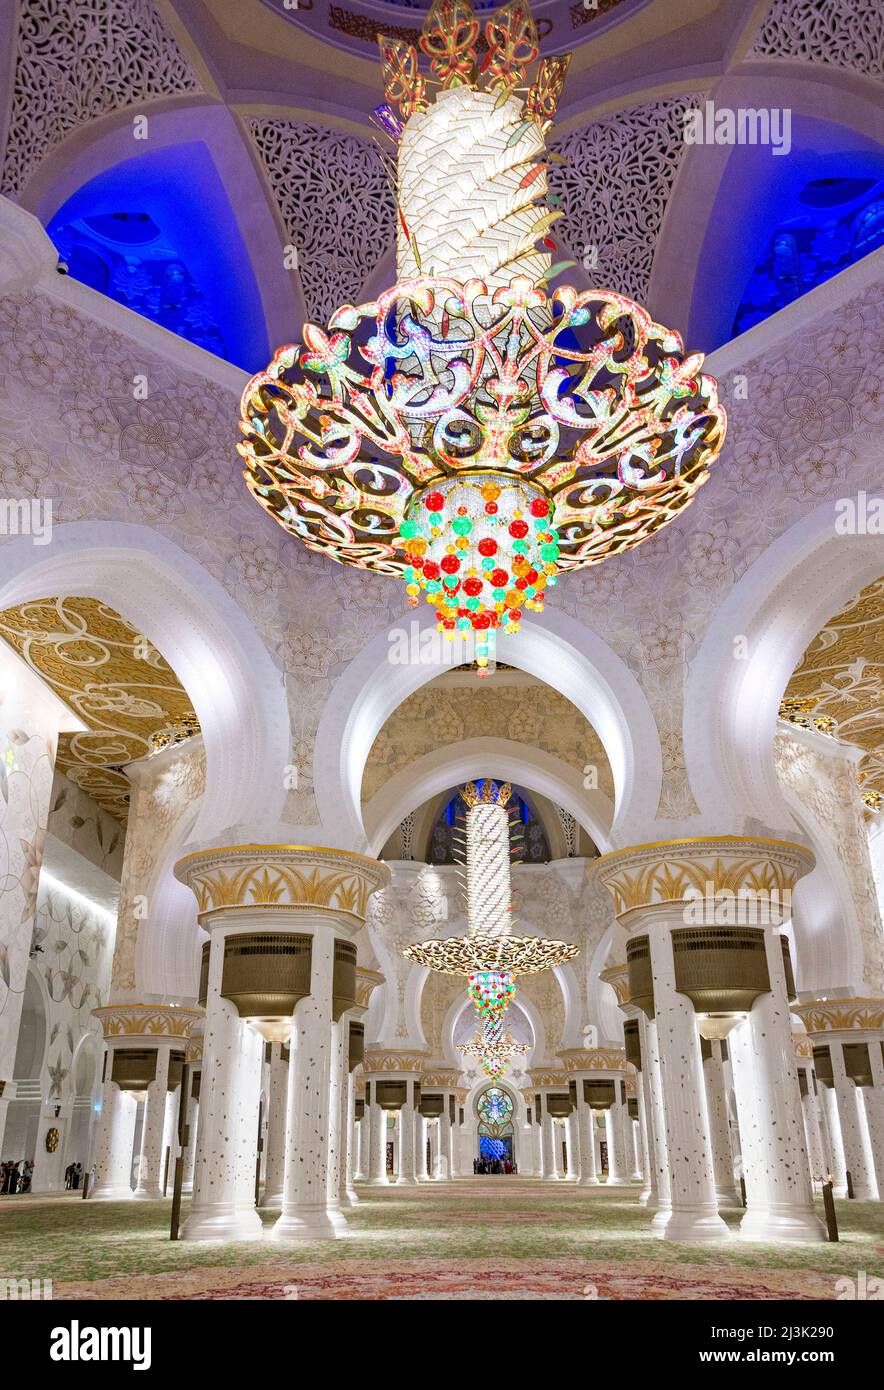 Guardando nella sala di preghiera principale della Grande Moschea di Abu Dhabi, Emirati Arabi Uniti, con i suoi lampadari di cristallo Swarovski. È anche l'auto più grande del mondo... Foto Stock